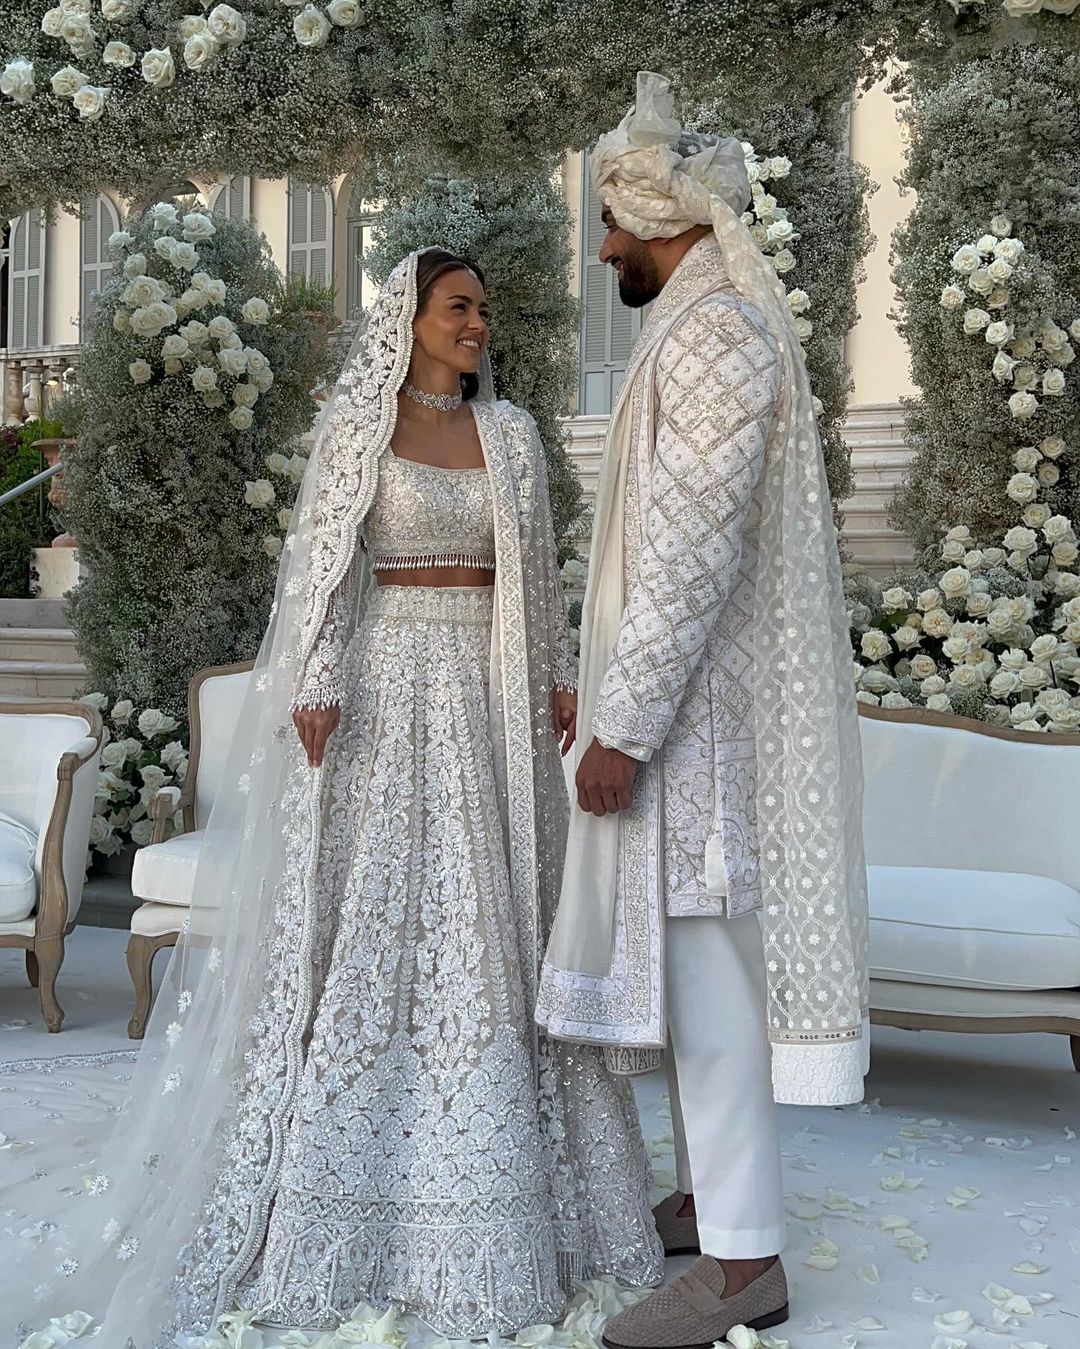 Миллиардер Умар Камани и Нада Адель сыграли свадьбу за £20 млн. На празднике выступила Мэрайя Кэри, а среди гостей была Наоми Кэмпбелл